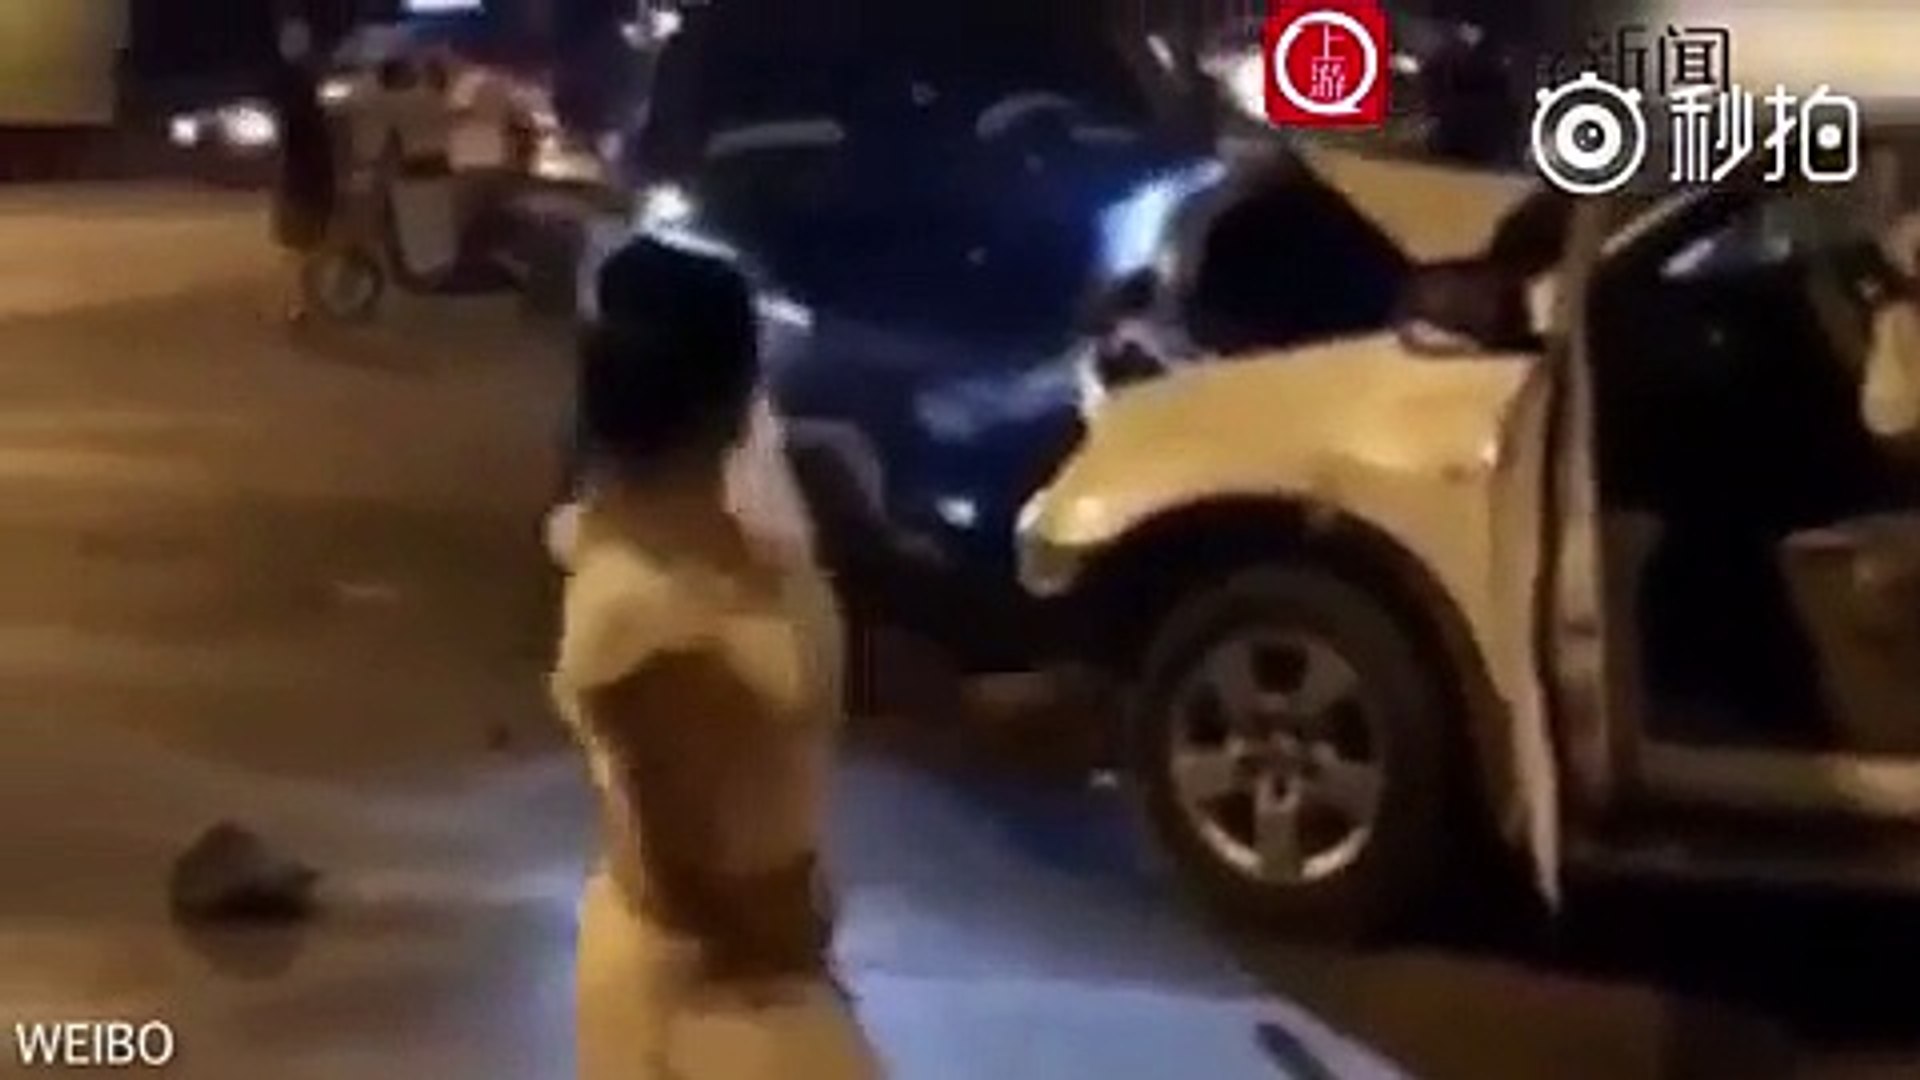 فيديو: امرأة ترقص على جثة رجل دهسته بسيارتها! - فيديو Dailymotion